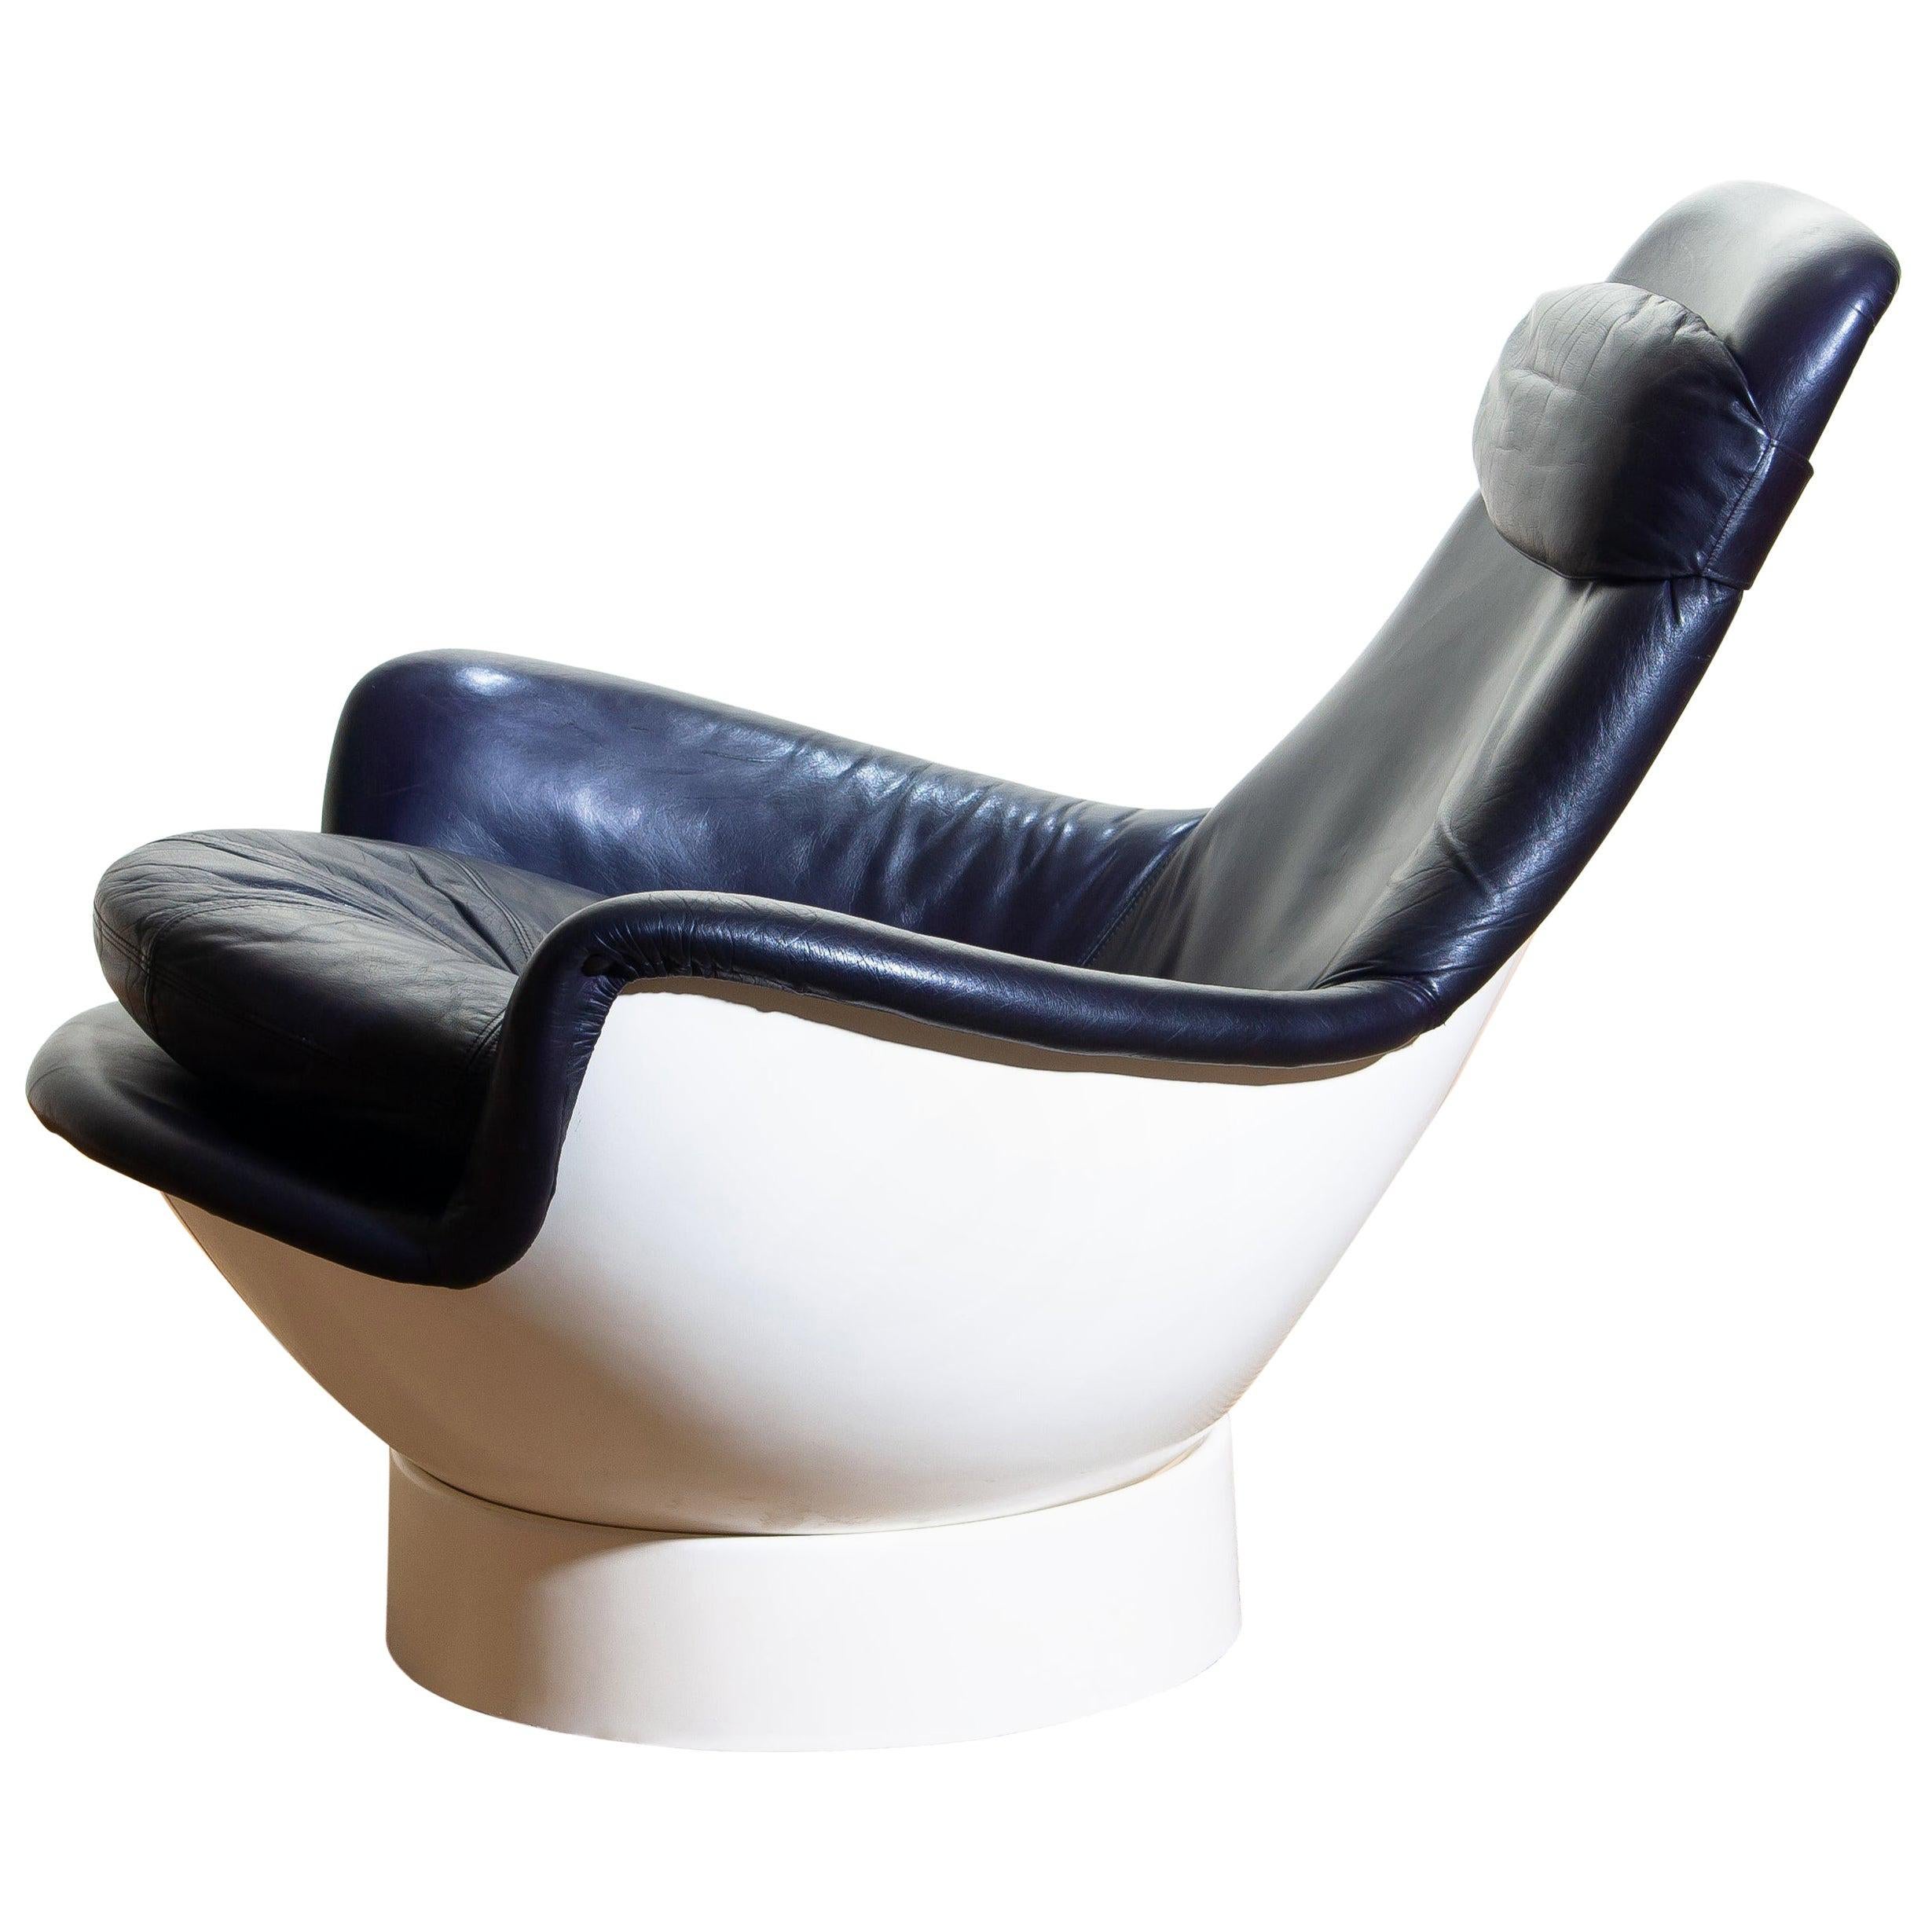 Merveilleuse chaise de salon Space Age de Risto Halme pour Peem Oy en fibre de verre, recouverte de cuir violet foncé. Fabriqué en Finlande, années 1970.
Nommée 